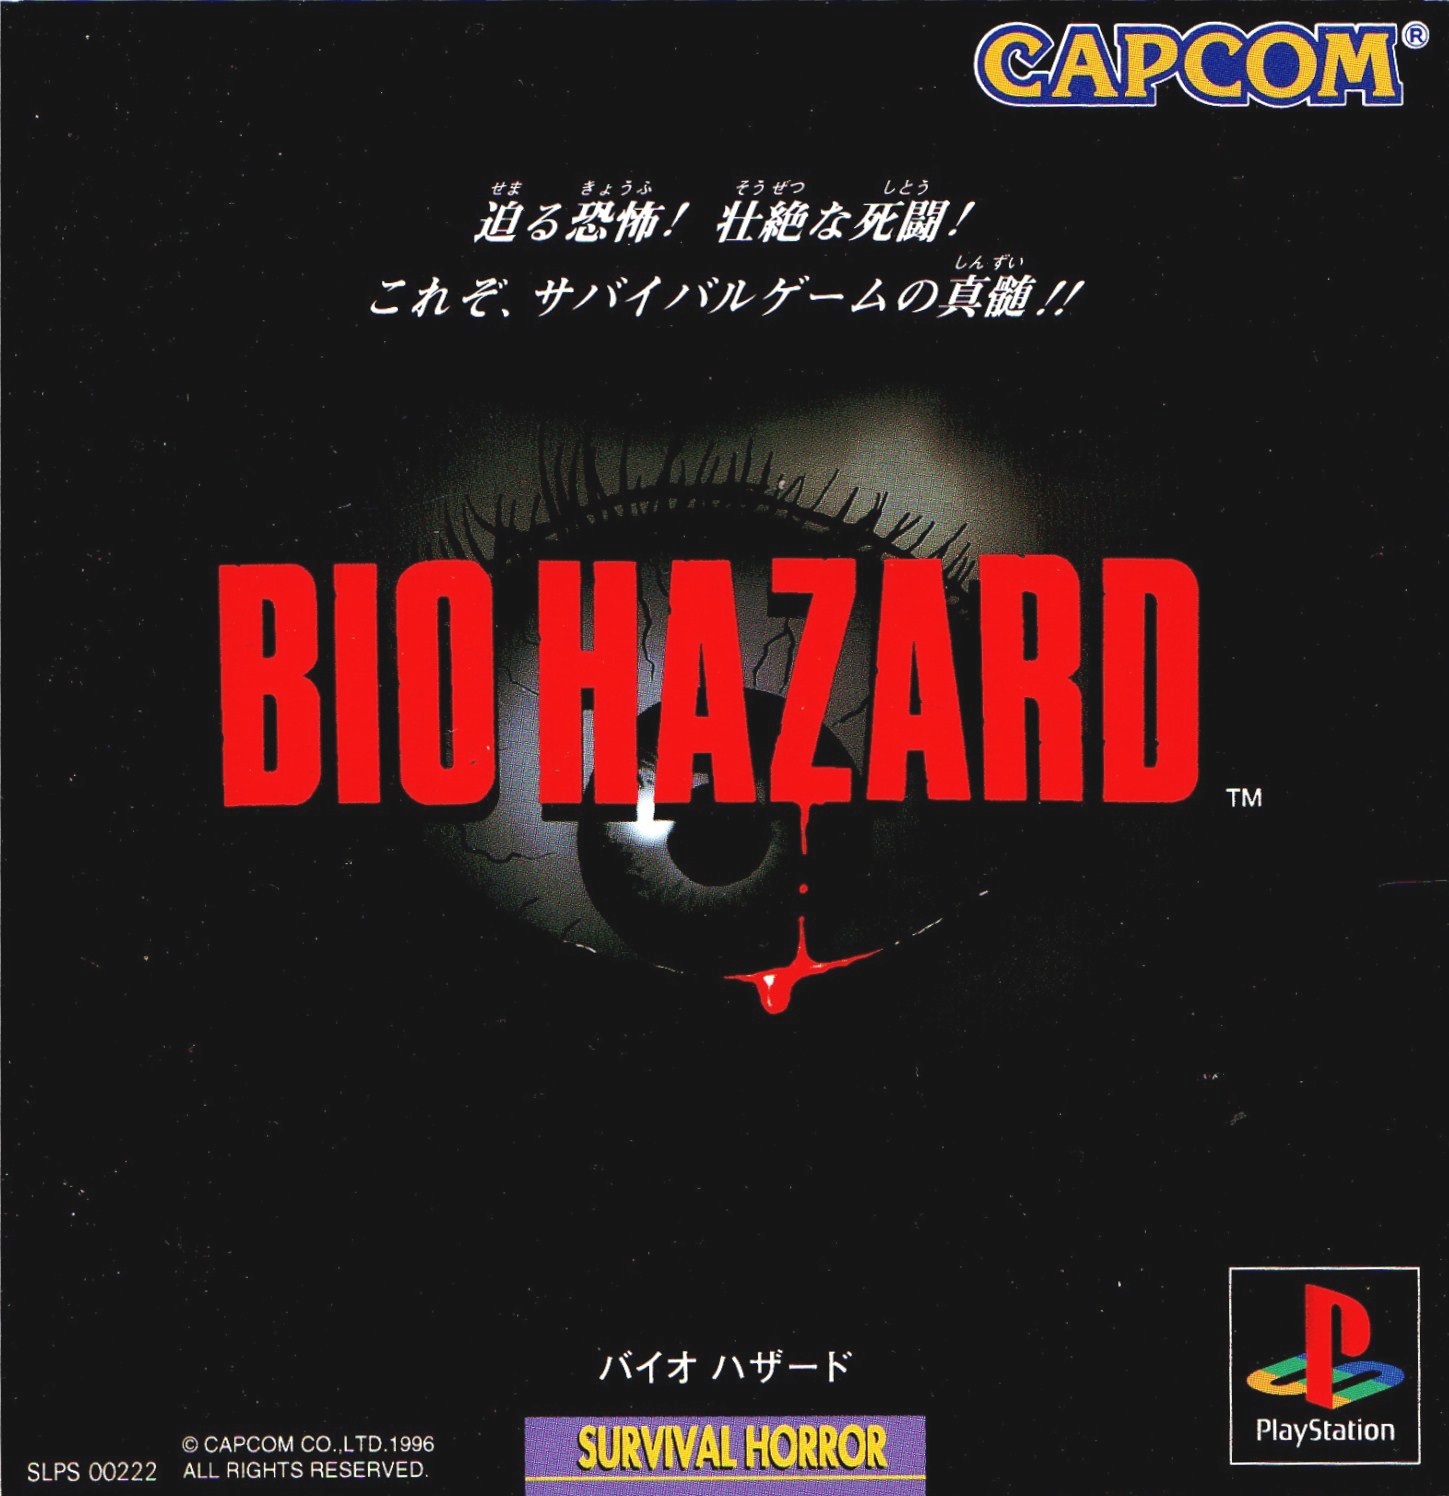 Portada de la edición japonesa de Resident Evil, allí llamado Bio Hazard, en su primera versión para Playstation 1